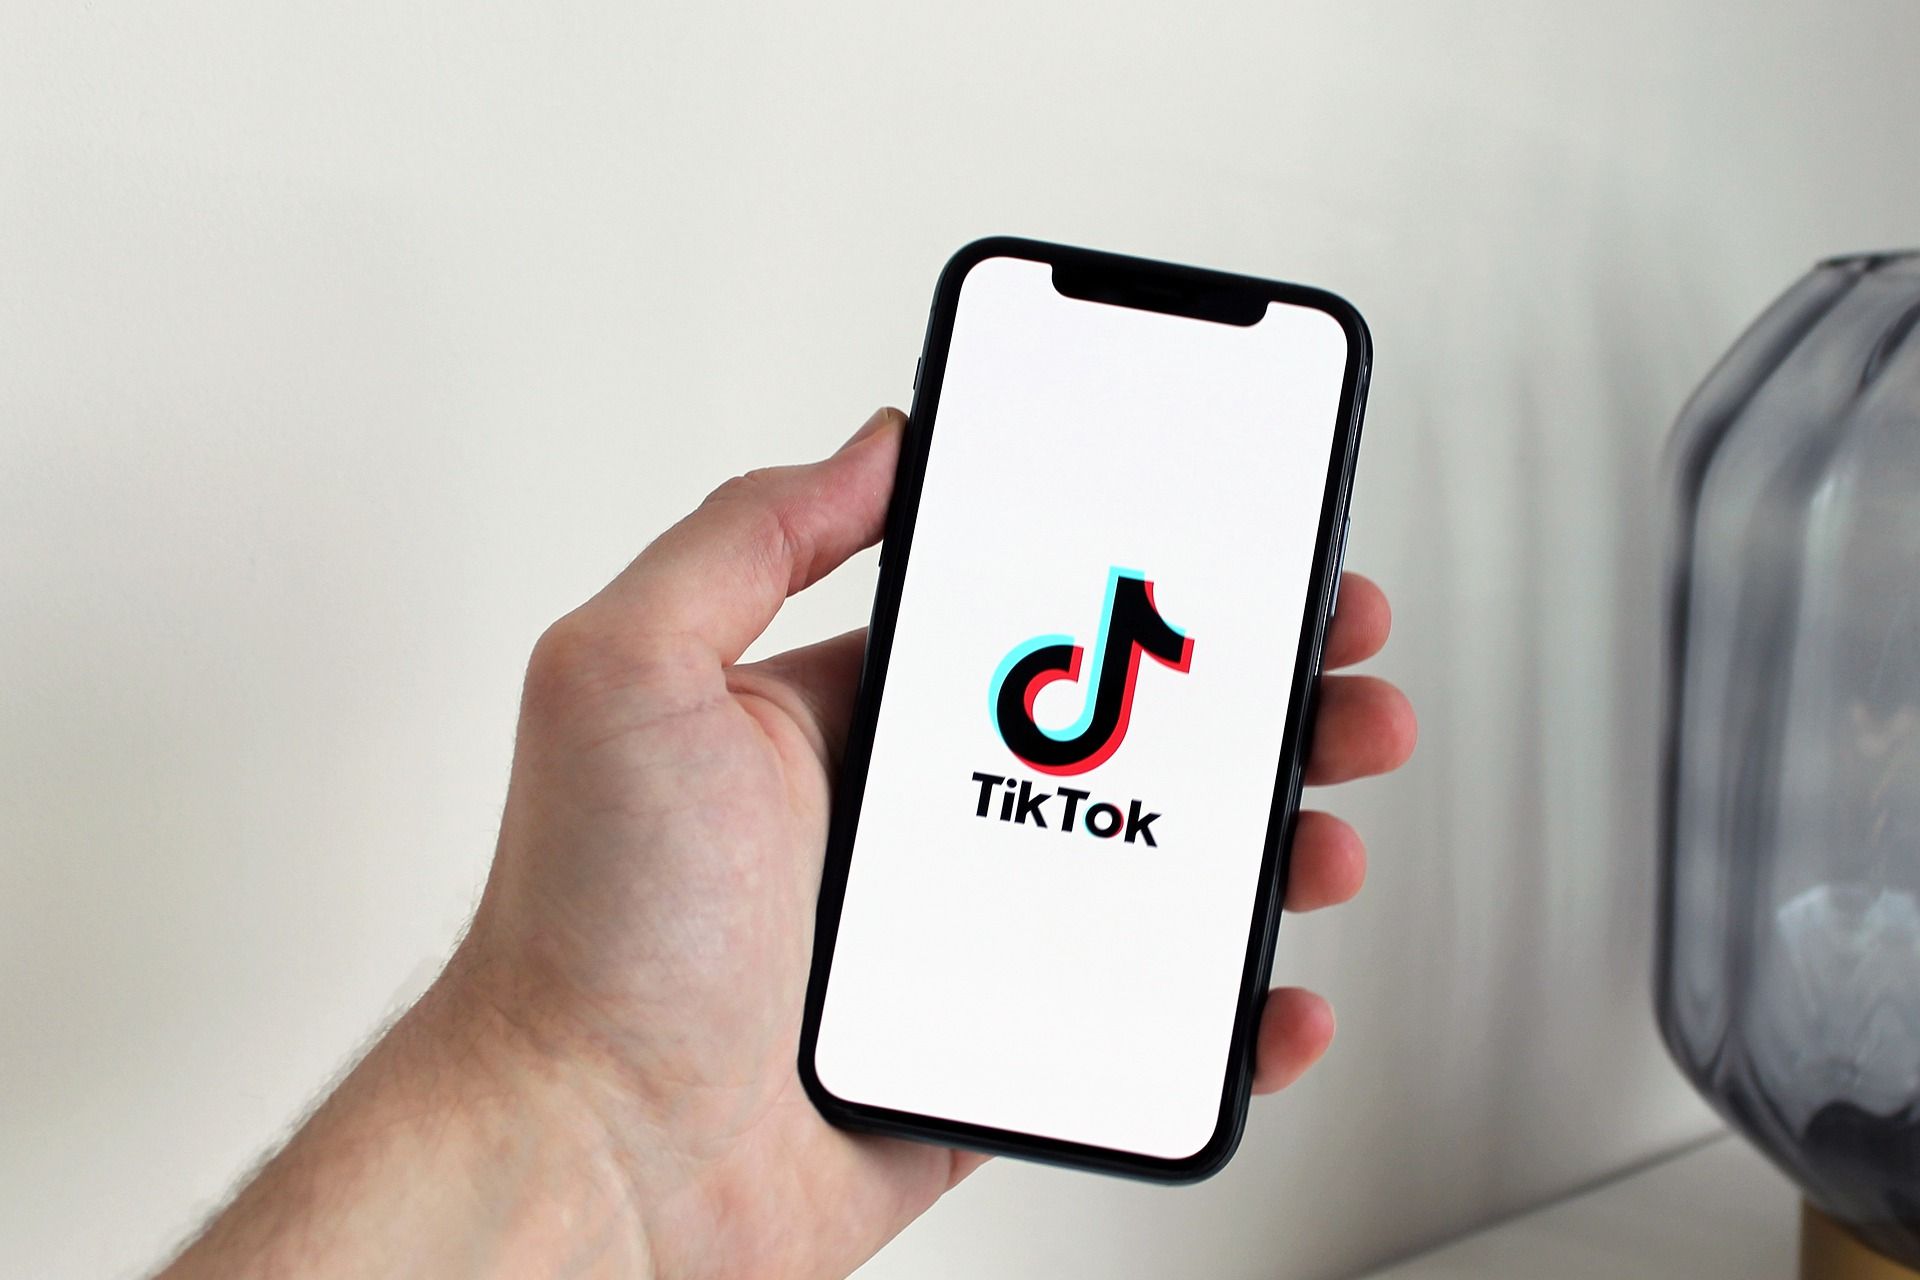 Download video TikTok tanpa watermark dan sound MP3 dicari dan cara unduh yang resmi tanpa aplikasi SSSTikTok dan SnapTik.